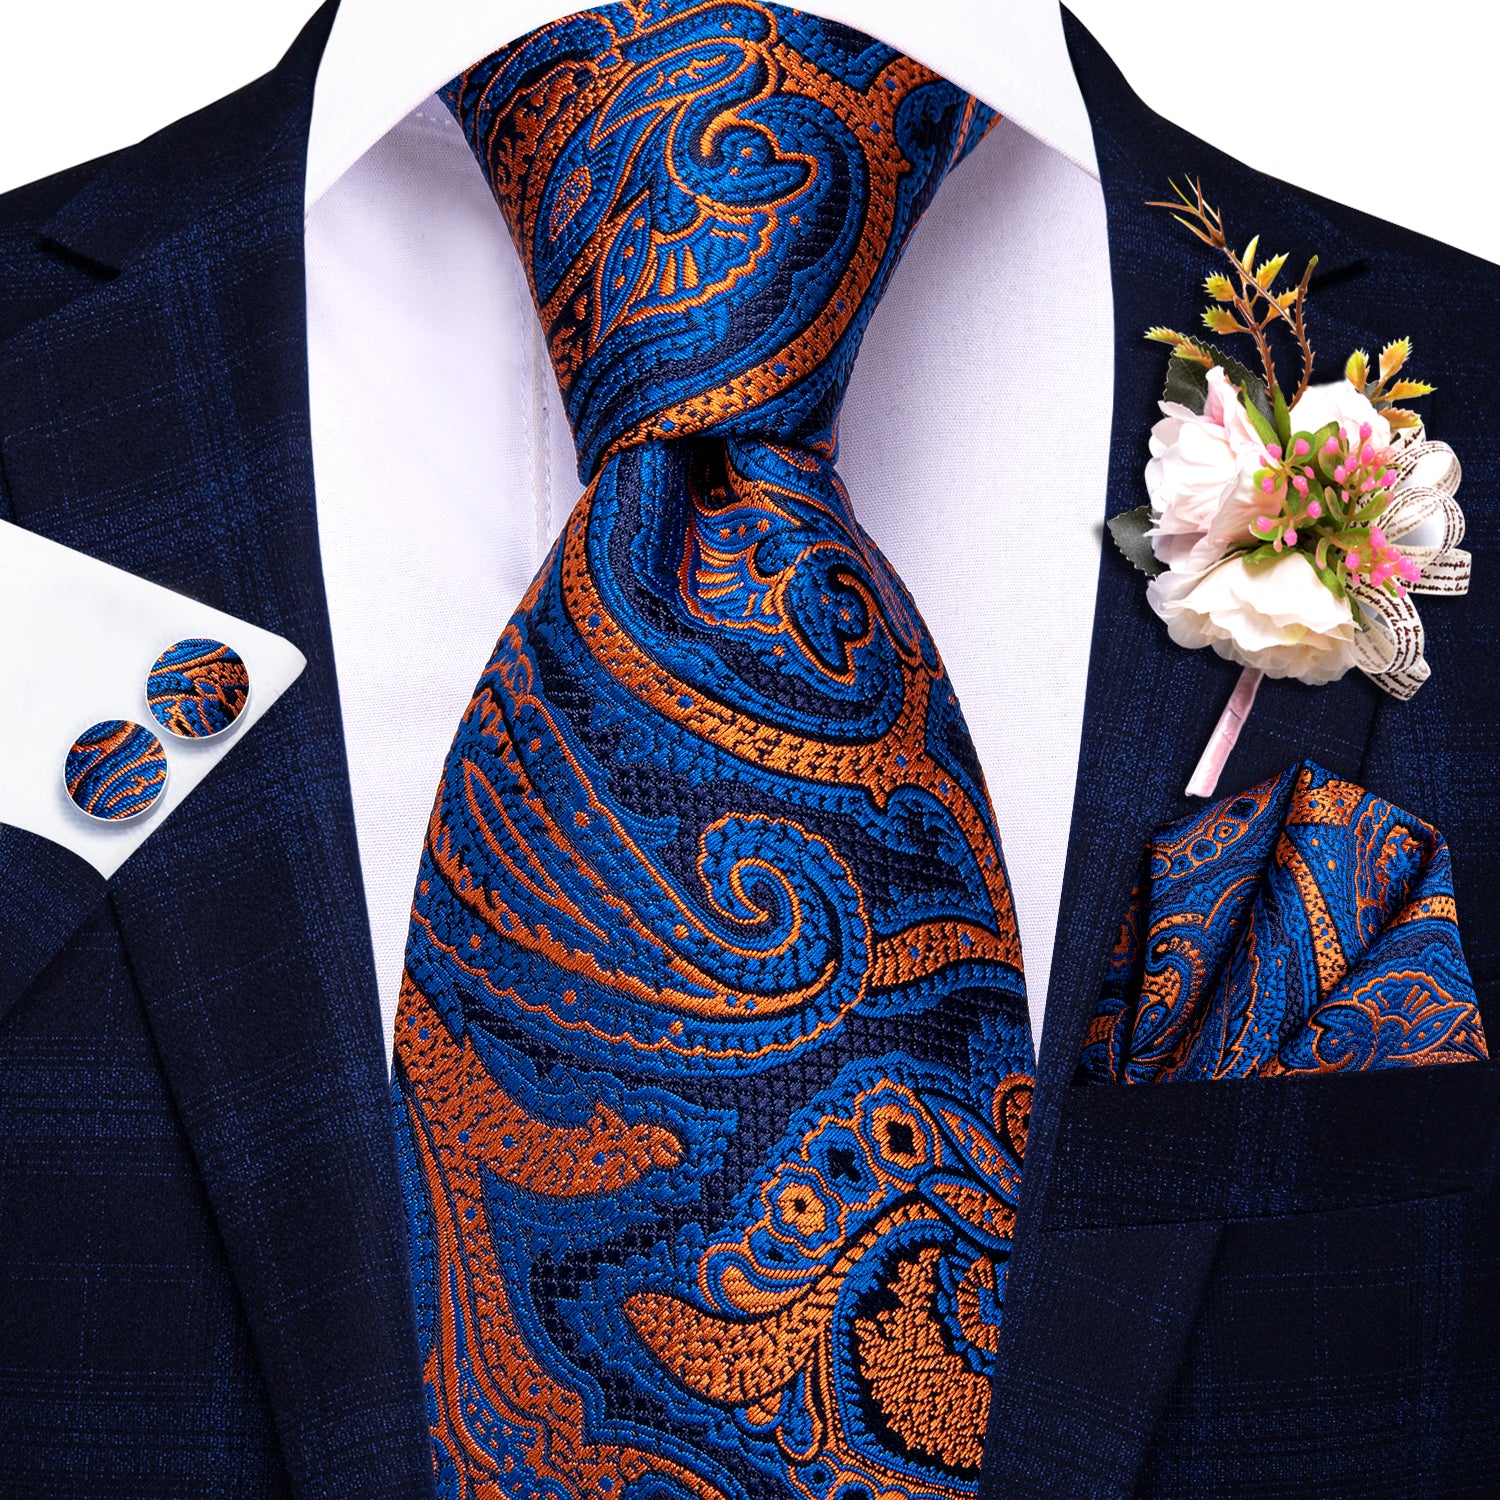 Blue Orange Floral Tie Handkerchief Cufflinks Set with Wedding Brooch